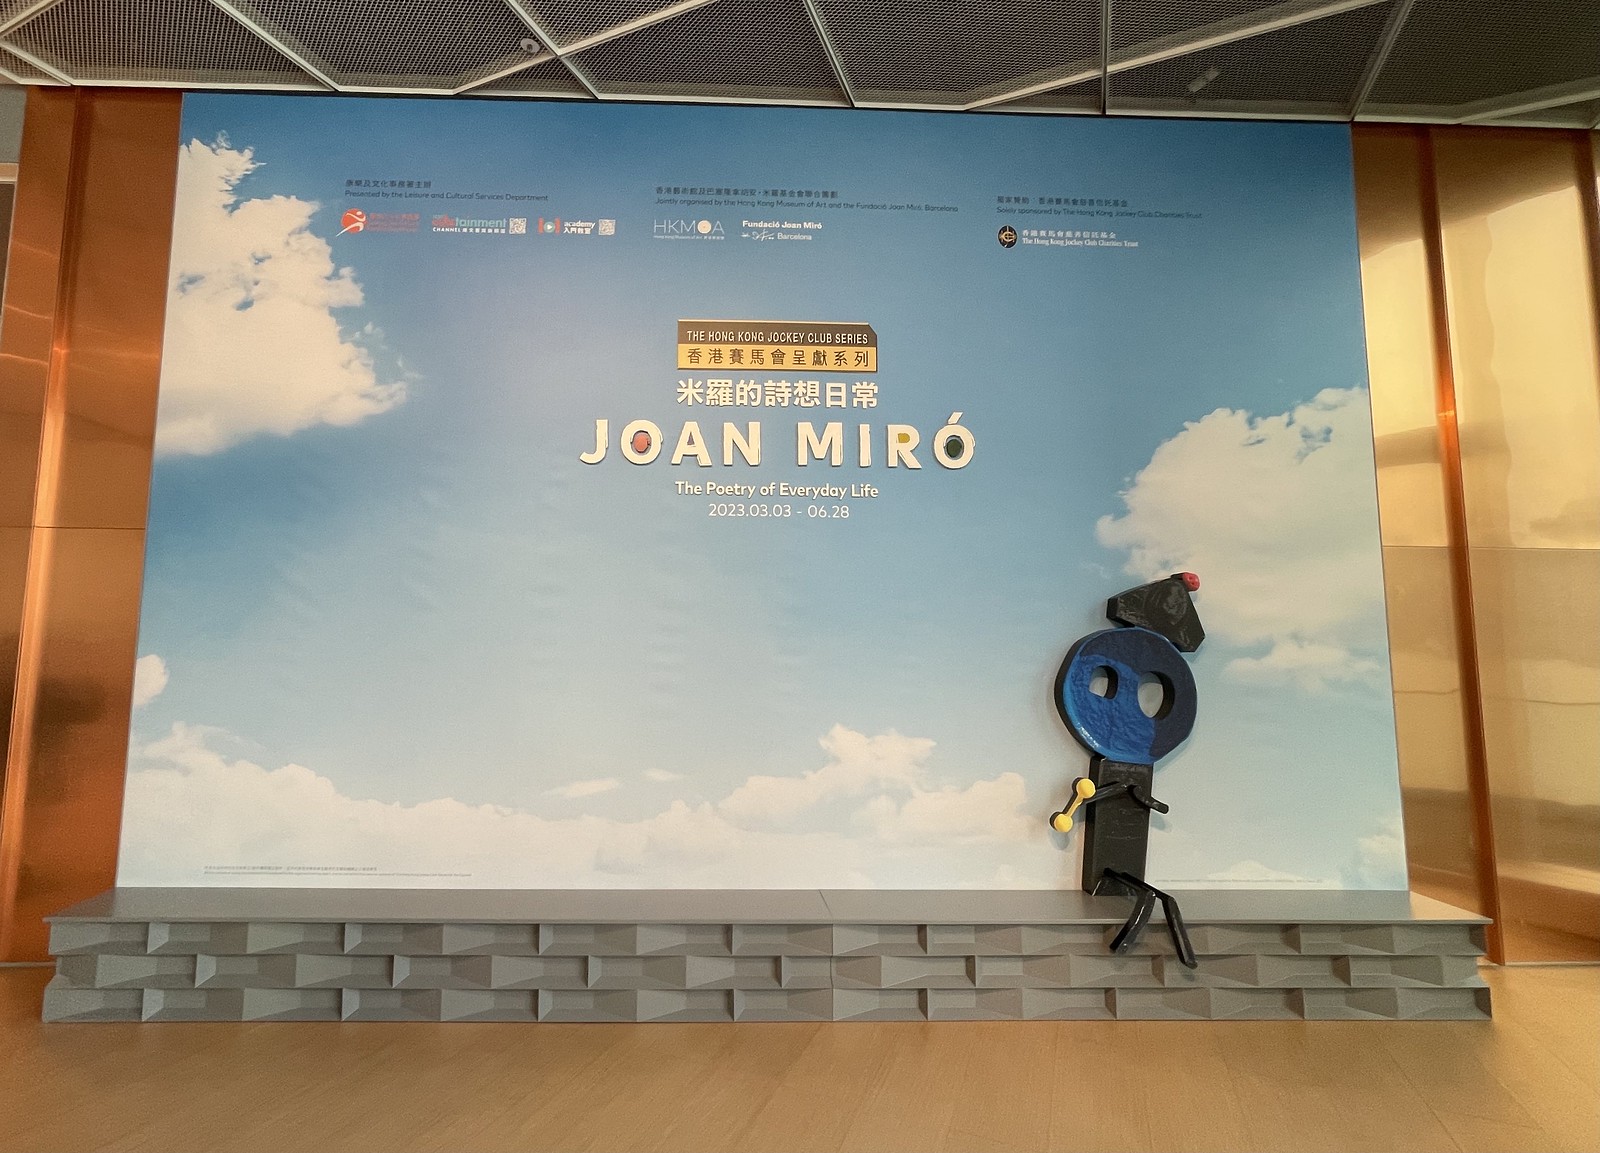 “米罗的诗想日常”主题展览©西班牙国家旅游局